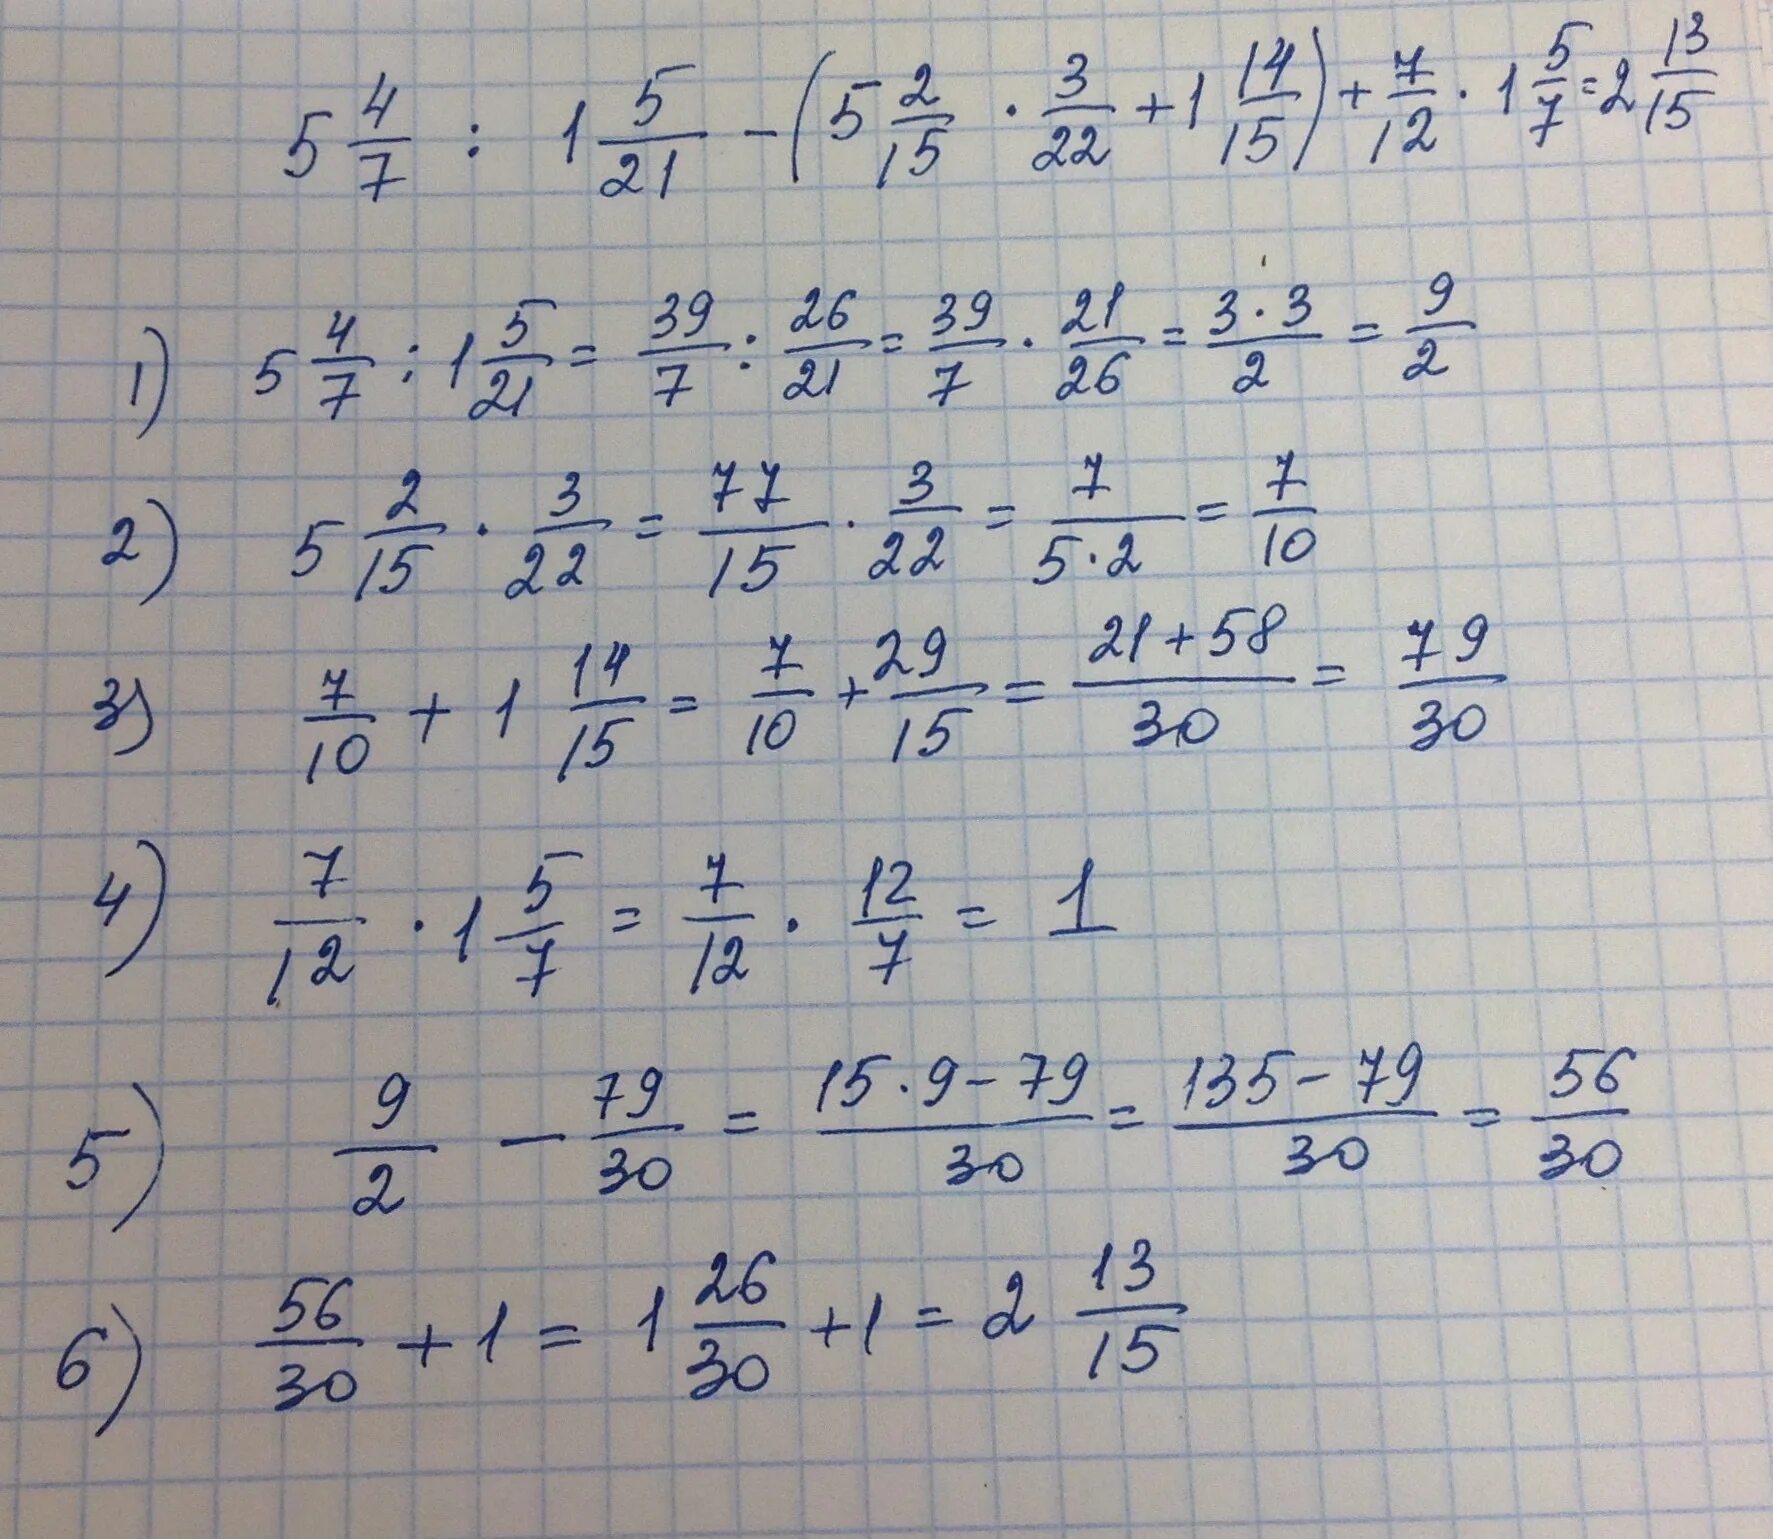 НВКУ 49-12-7. 5 × 12/15 +(5,6-11,2):1, 6/5. 5 1/3×2 1/4÷7 1/5 ответ. (5/6+2 3/4):4 7/9*2 2/3-1 2/3. 7 9 решение 3 класс